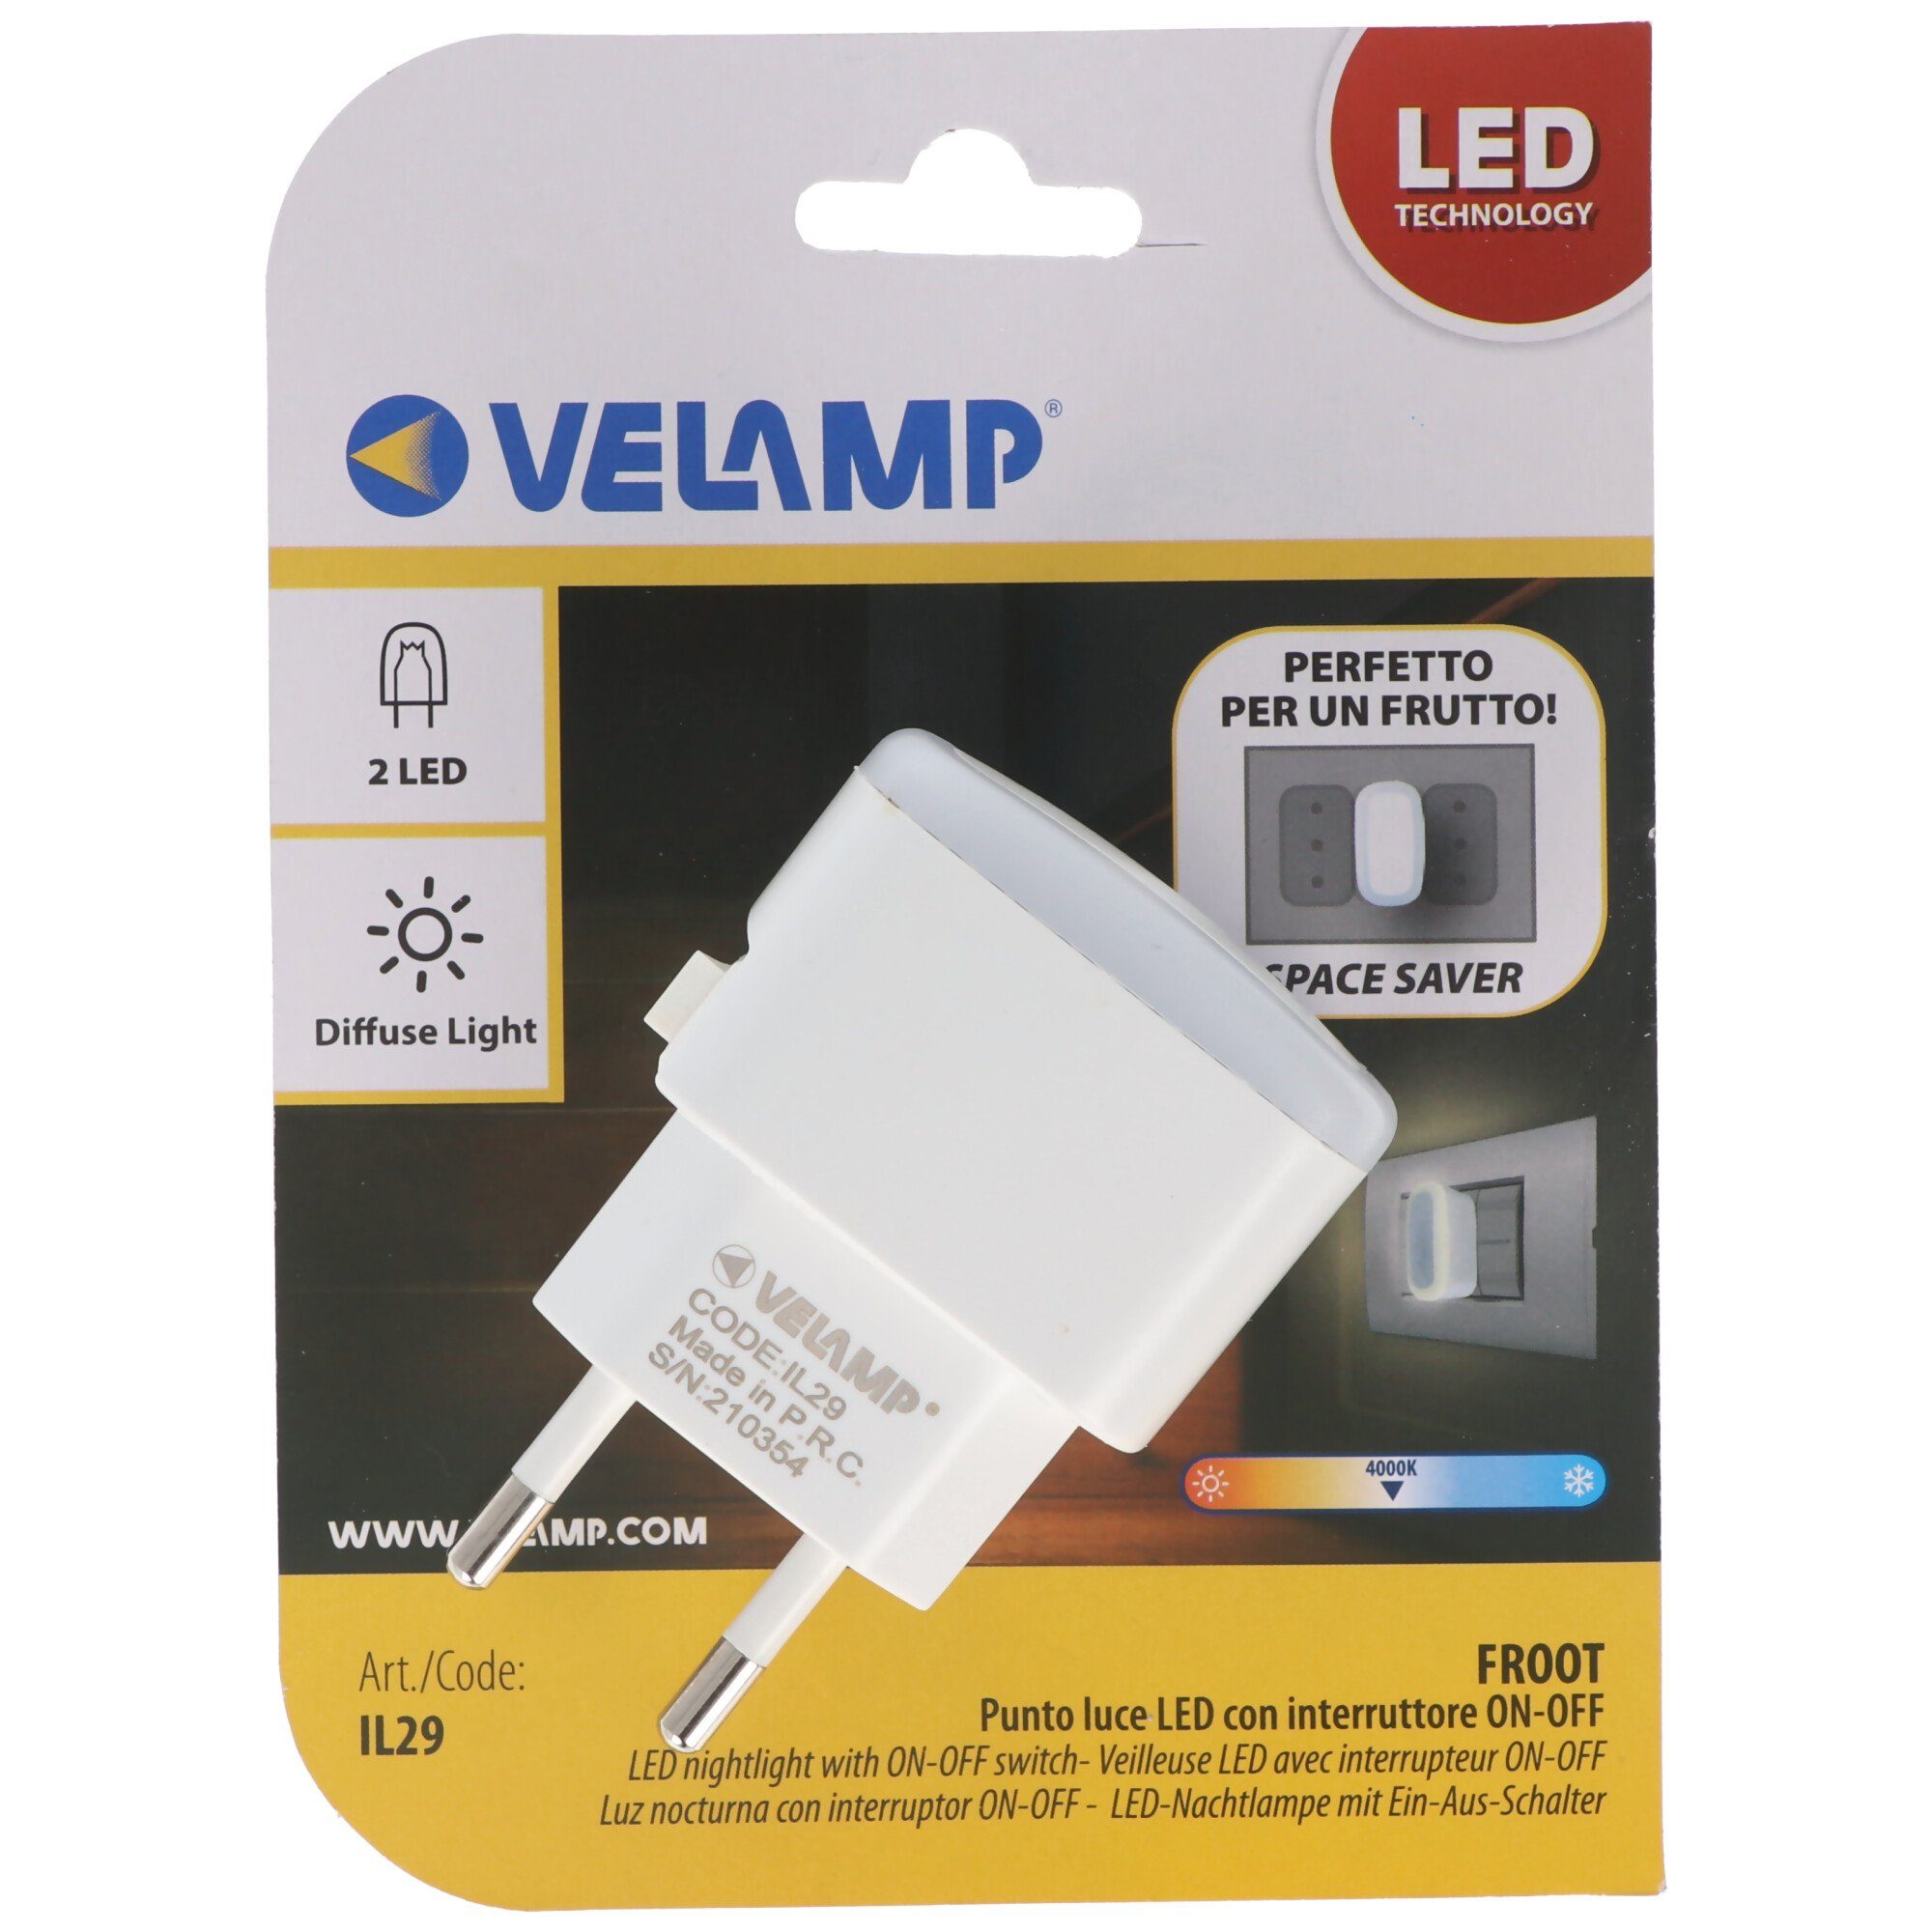 mit EIN/AUS-Schalter, Velamp kompakt, FROOT, Nachtlicht Velamp extra ver LED LED-Nachtlicht